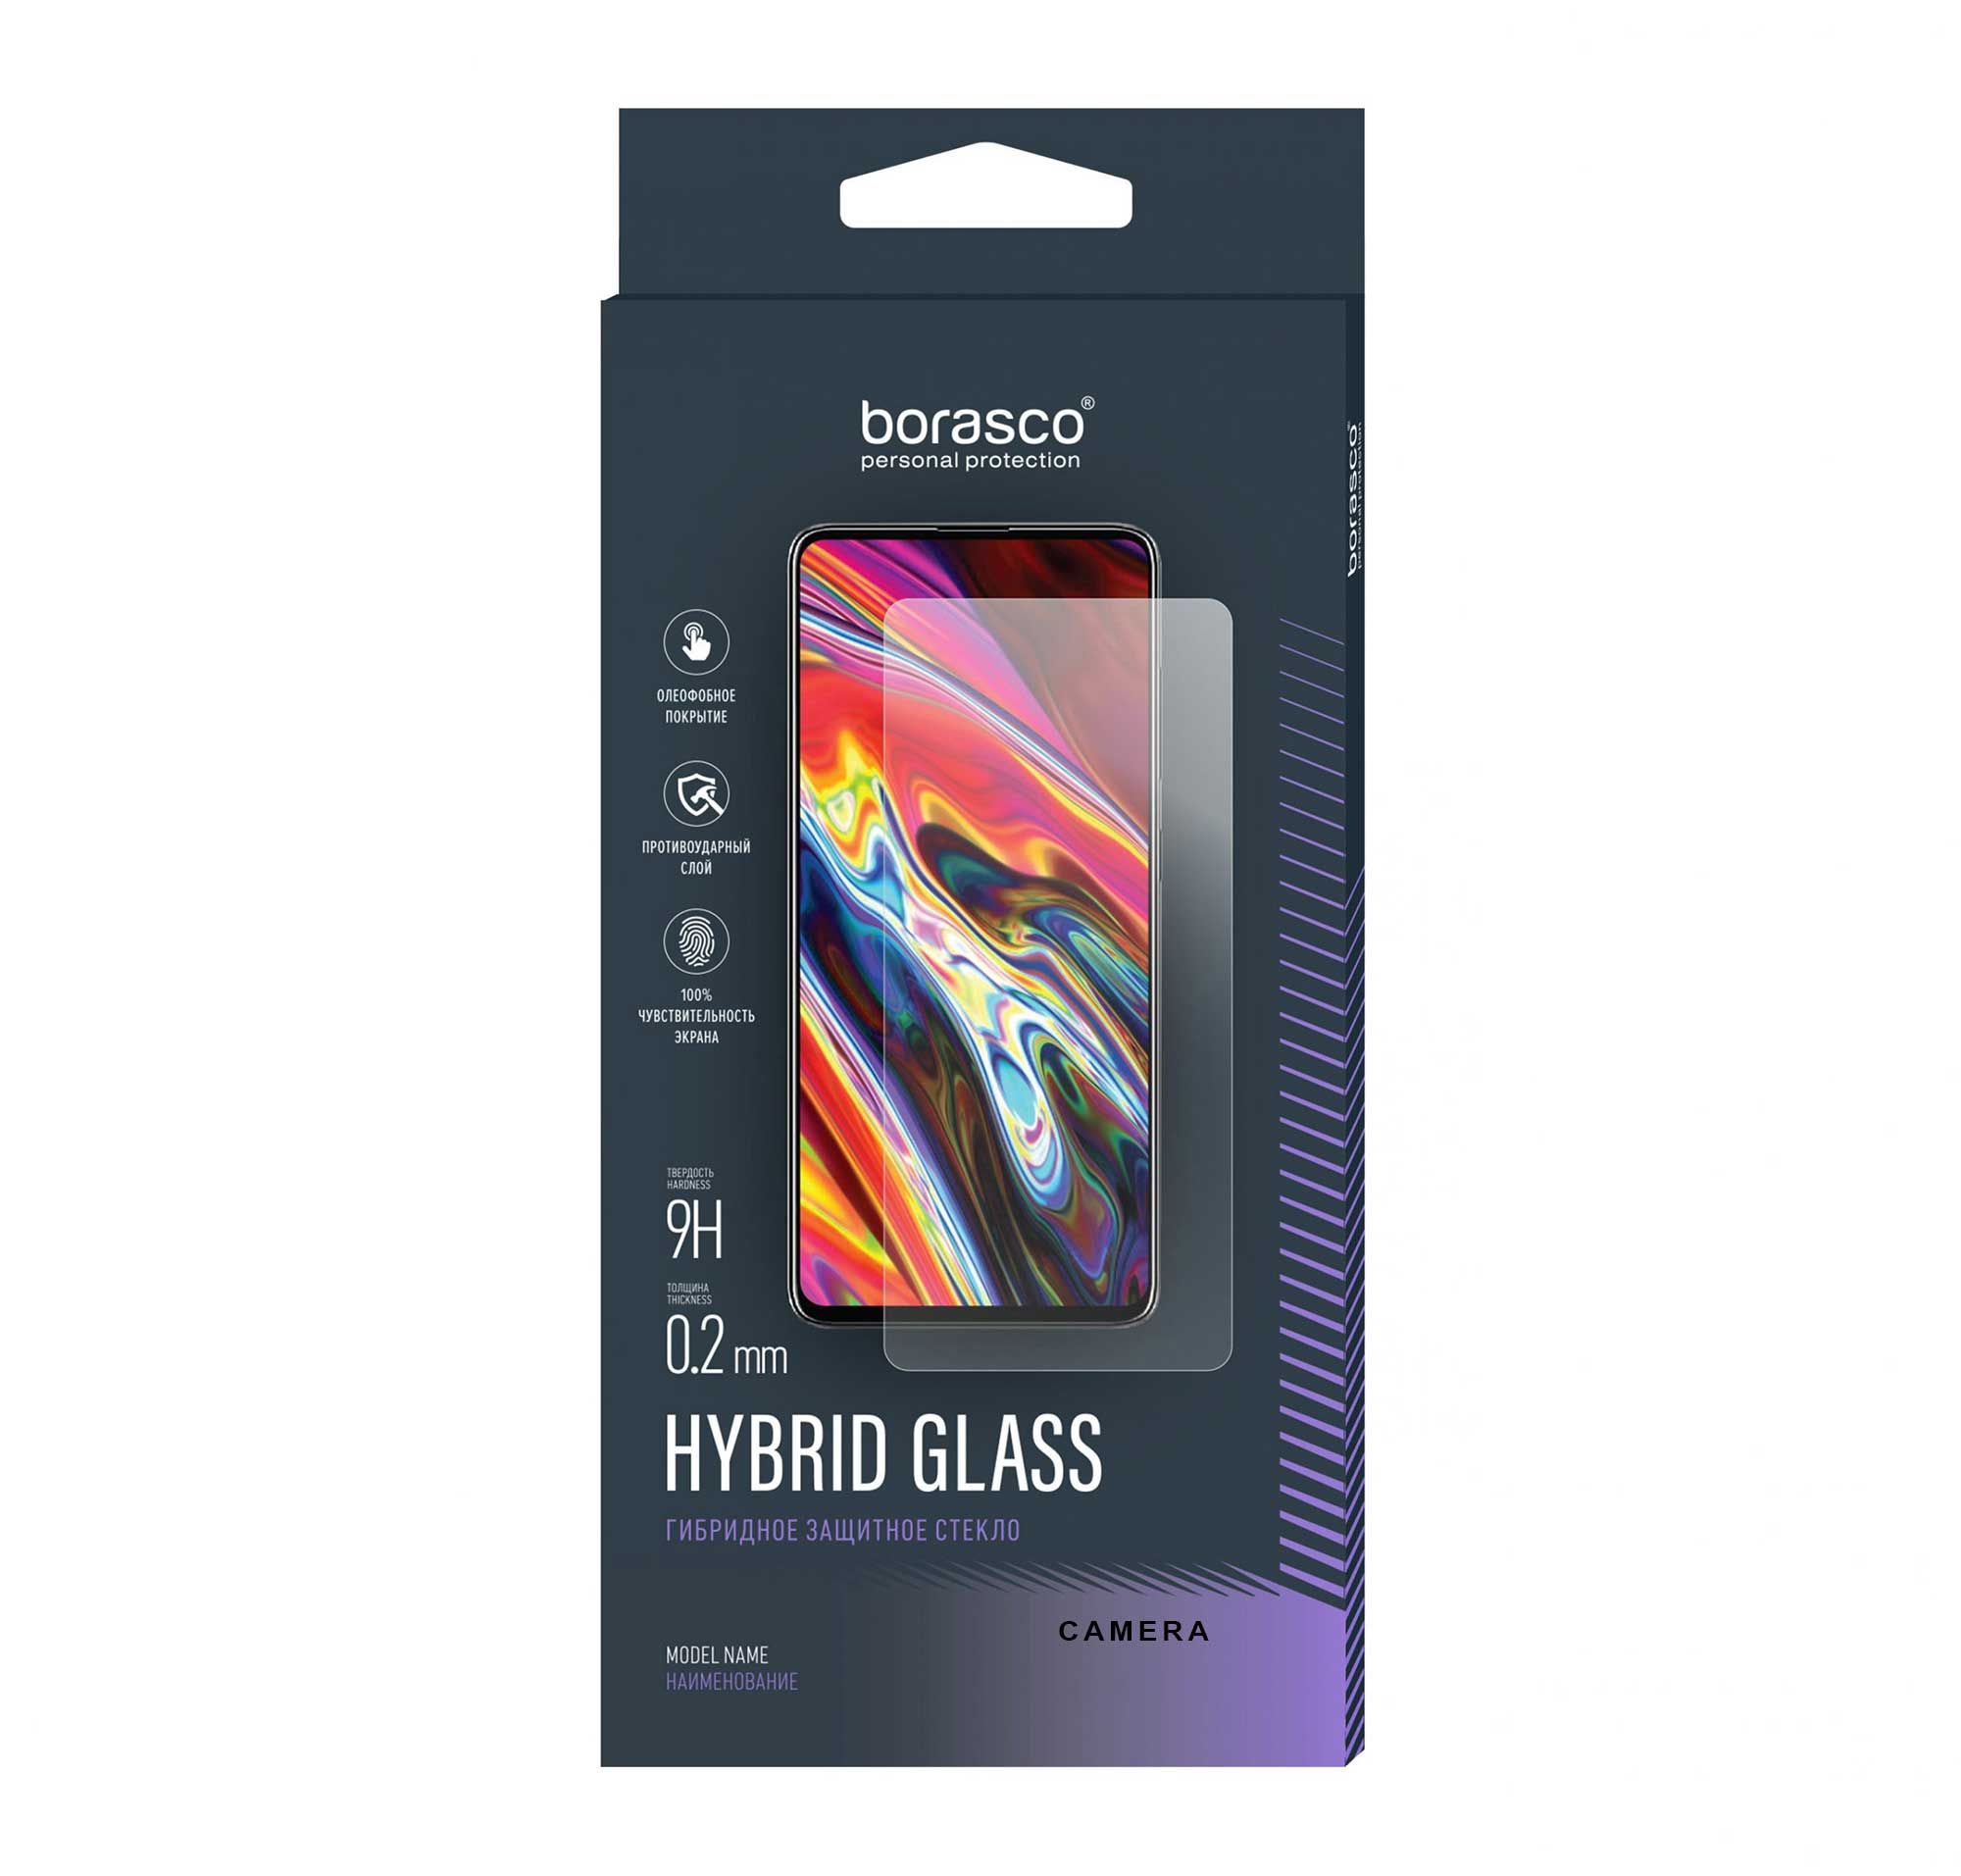 Защитное стекло (Экран+Камера) Hybrid Glass для Asus Zenfone 9 чехол mypads нарисованный скелет на скейт борде для asus zenfone 9 ai2202 задняя панель накладка бампер